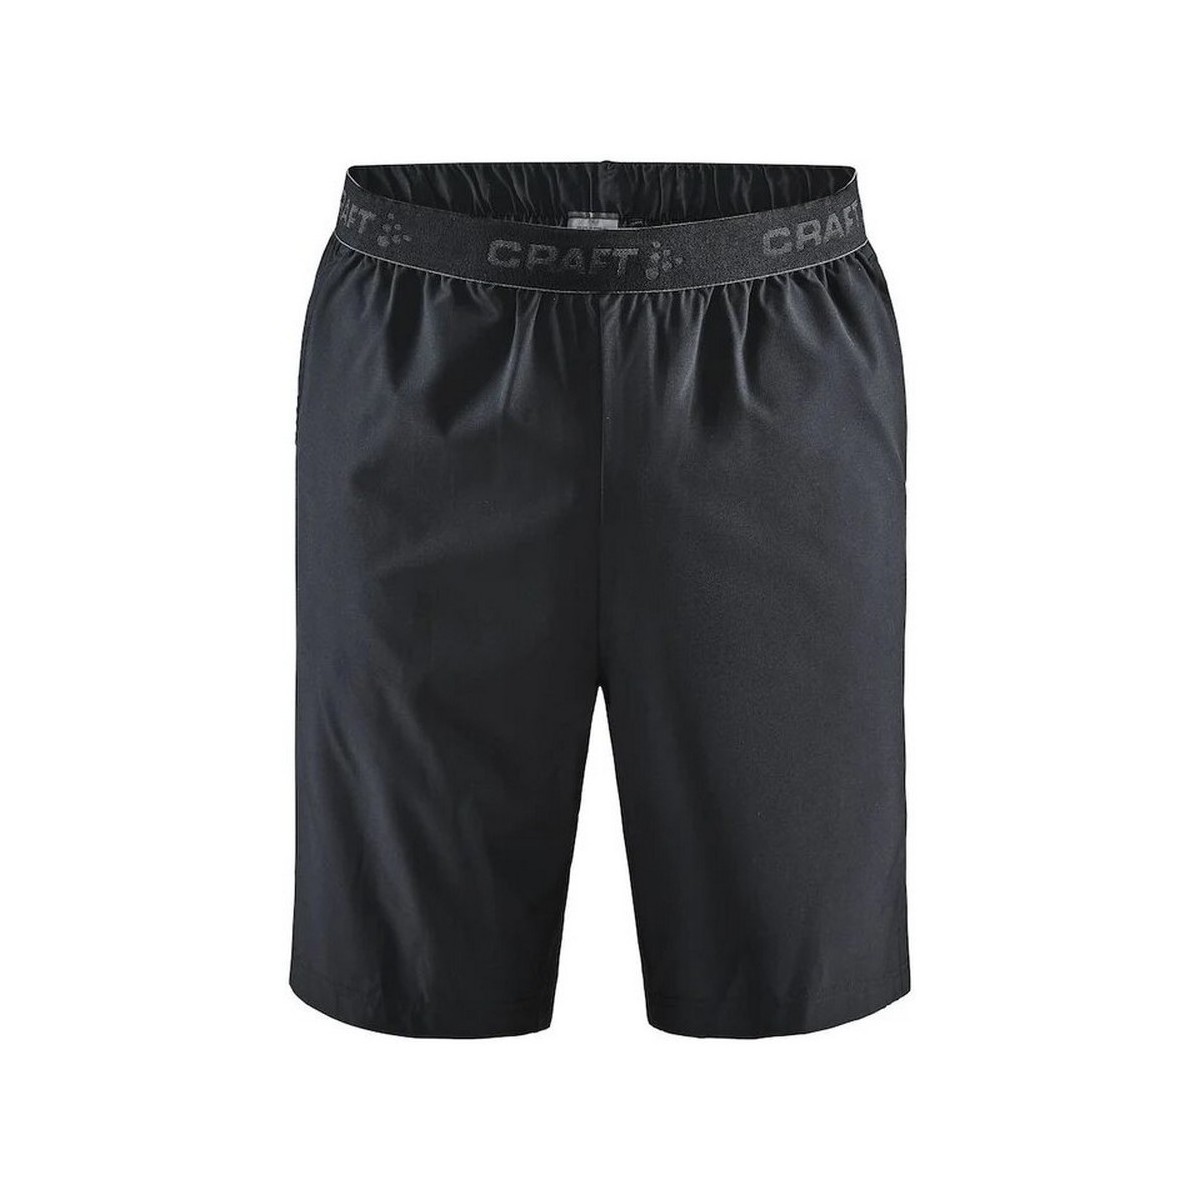 Abbigliamento Uomo Shorts / Bermuda Craft Core Essence Nero